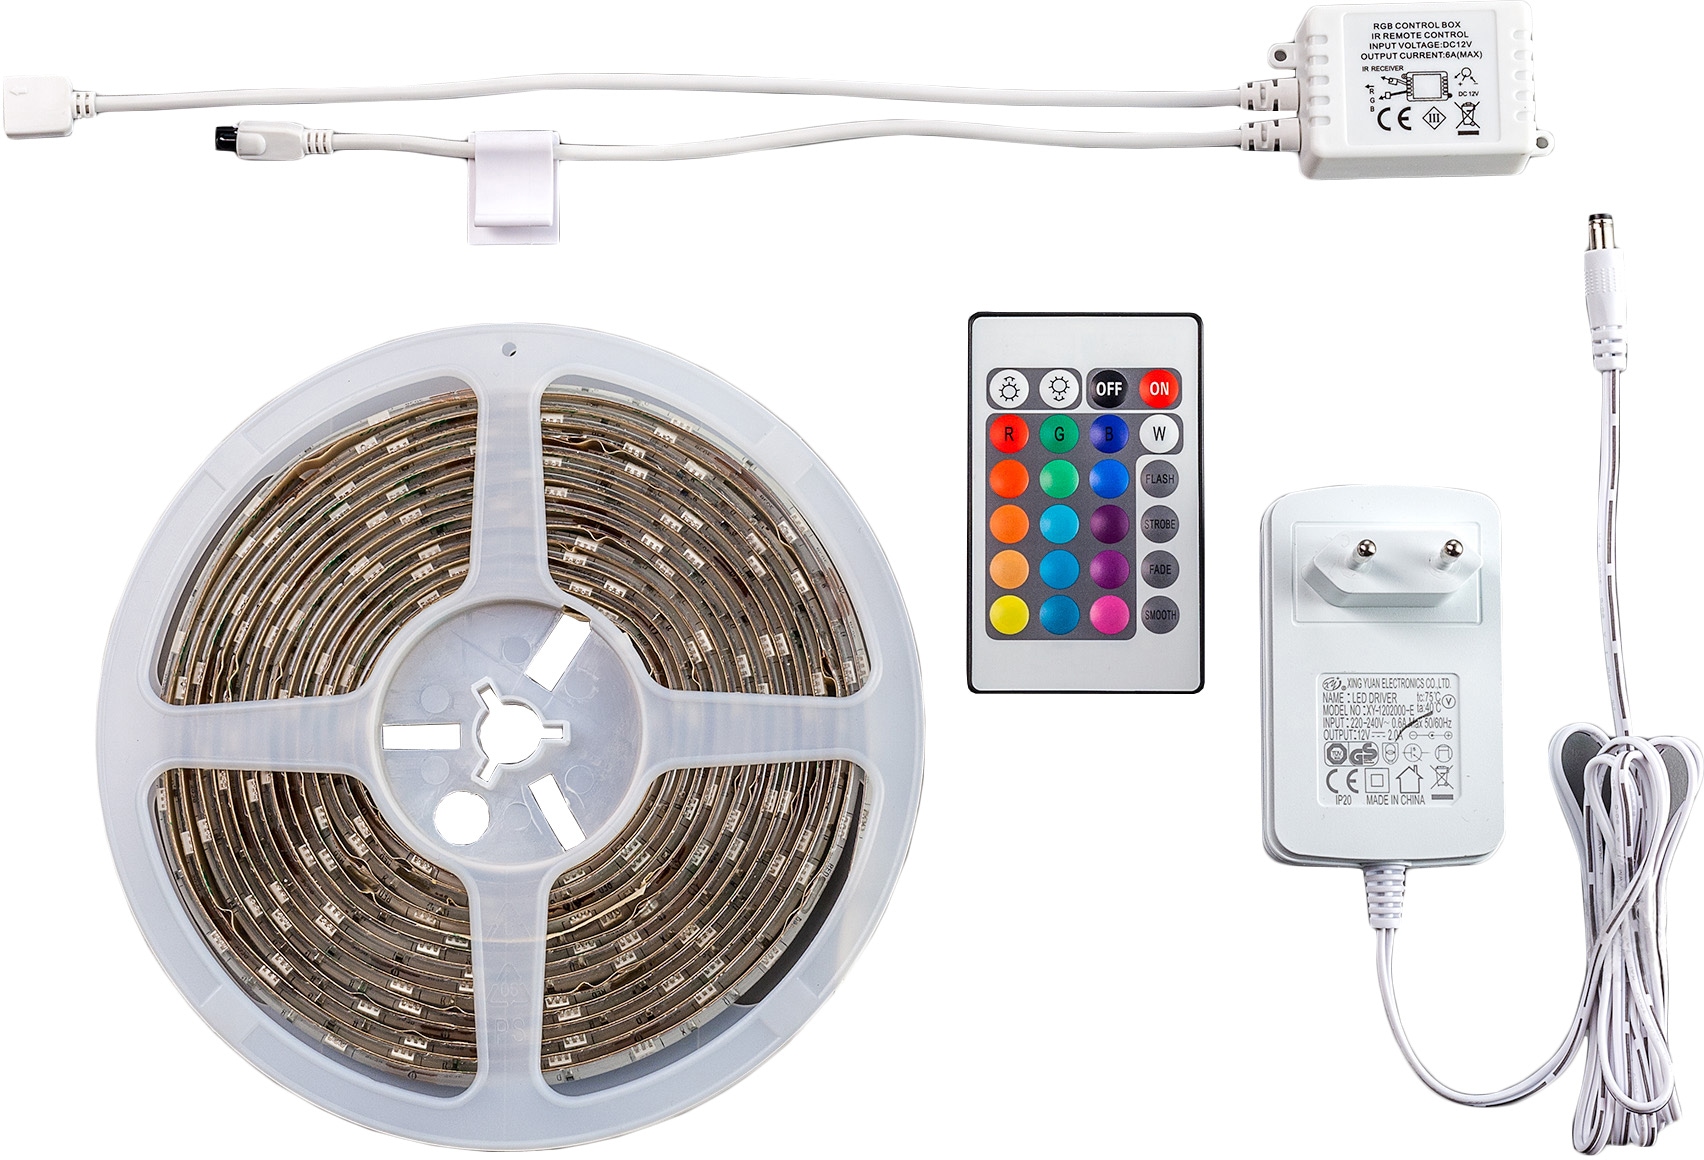 Farbwechsel Band/Stripe IP44 auf B.K.Licht LED-Streifen, dimmbar Fernbedienung inkl. kaufen LED 5m Rechnung